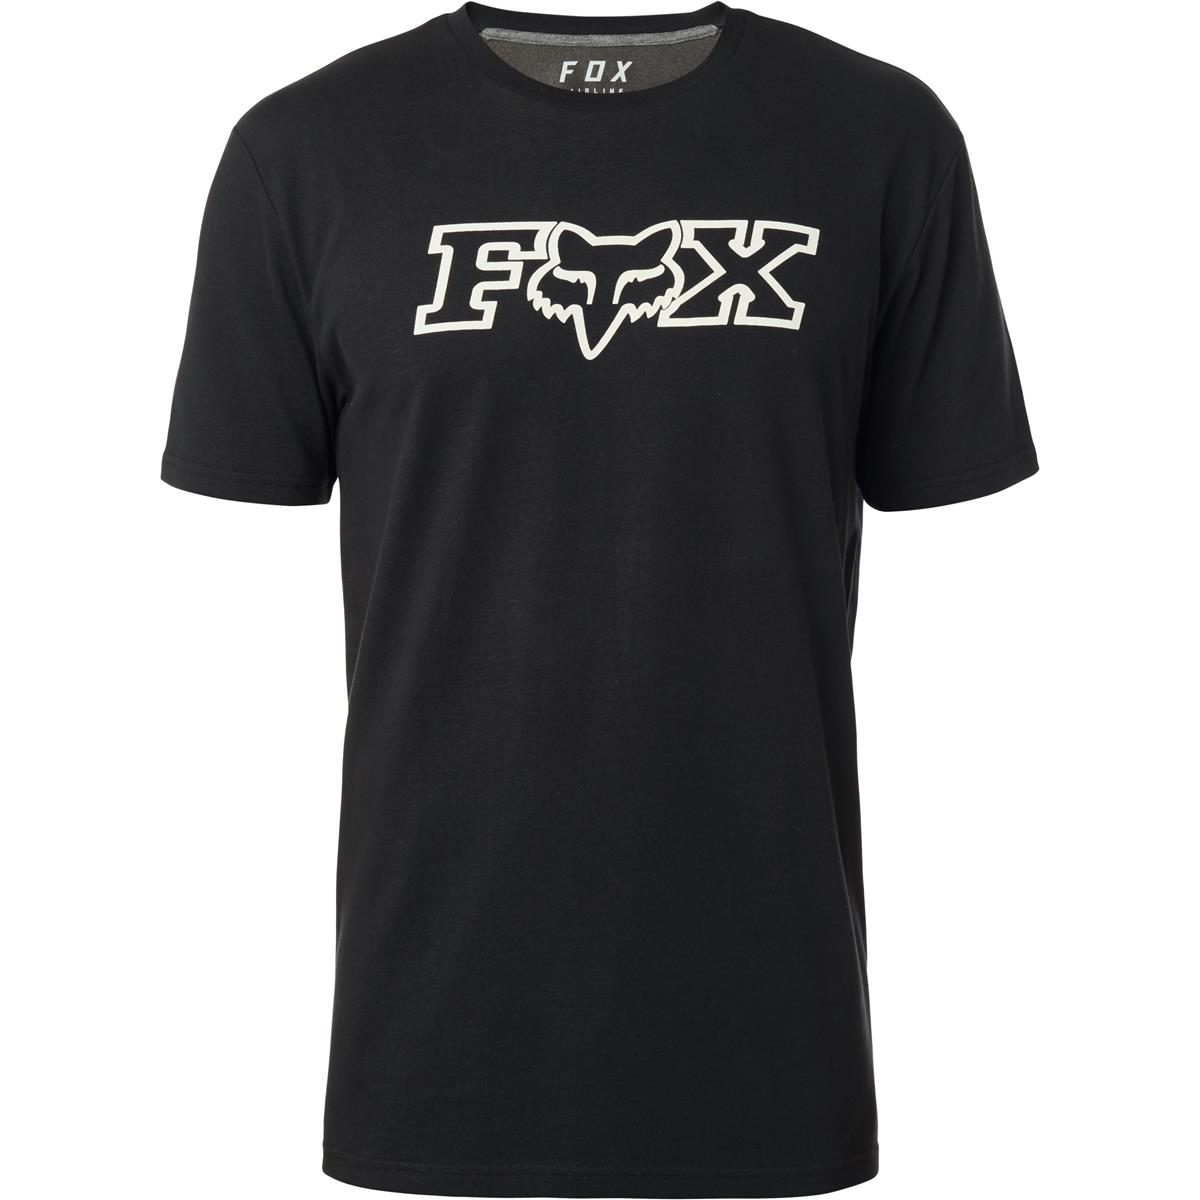 Fox T-Shirt Fox Head Airline Schwarz/Grau